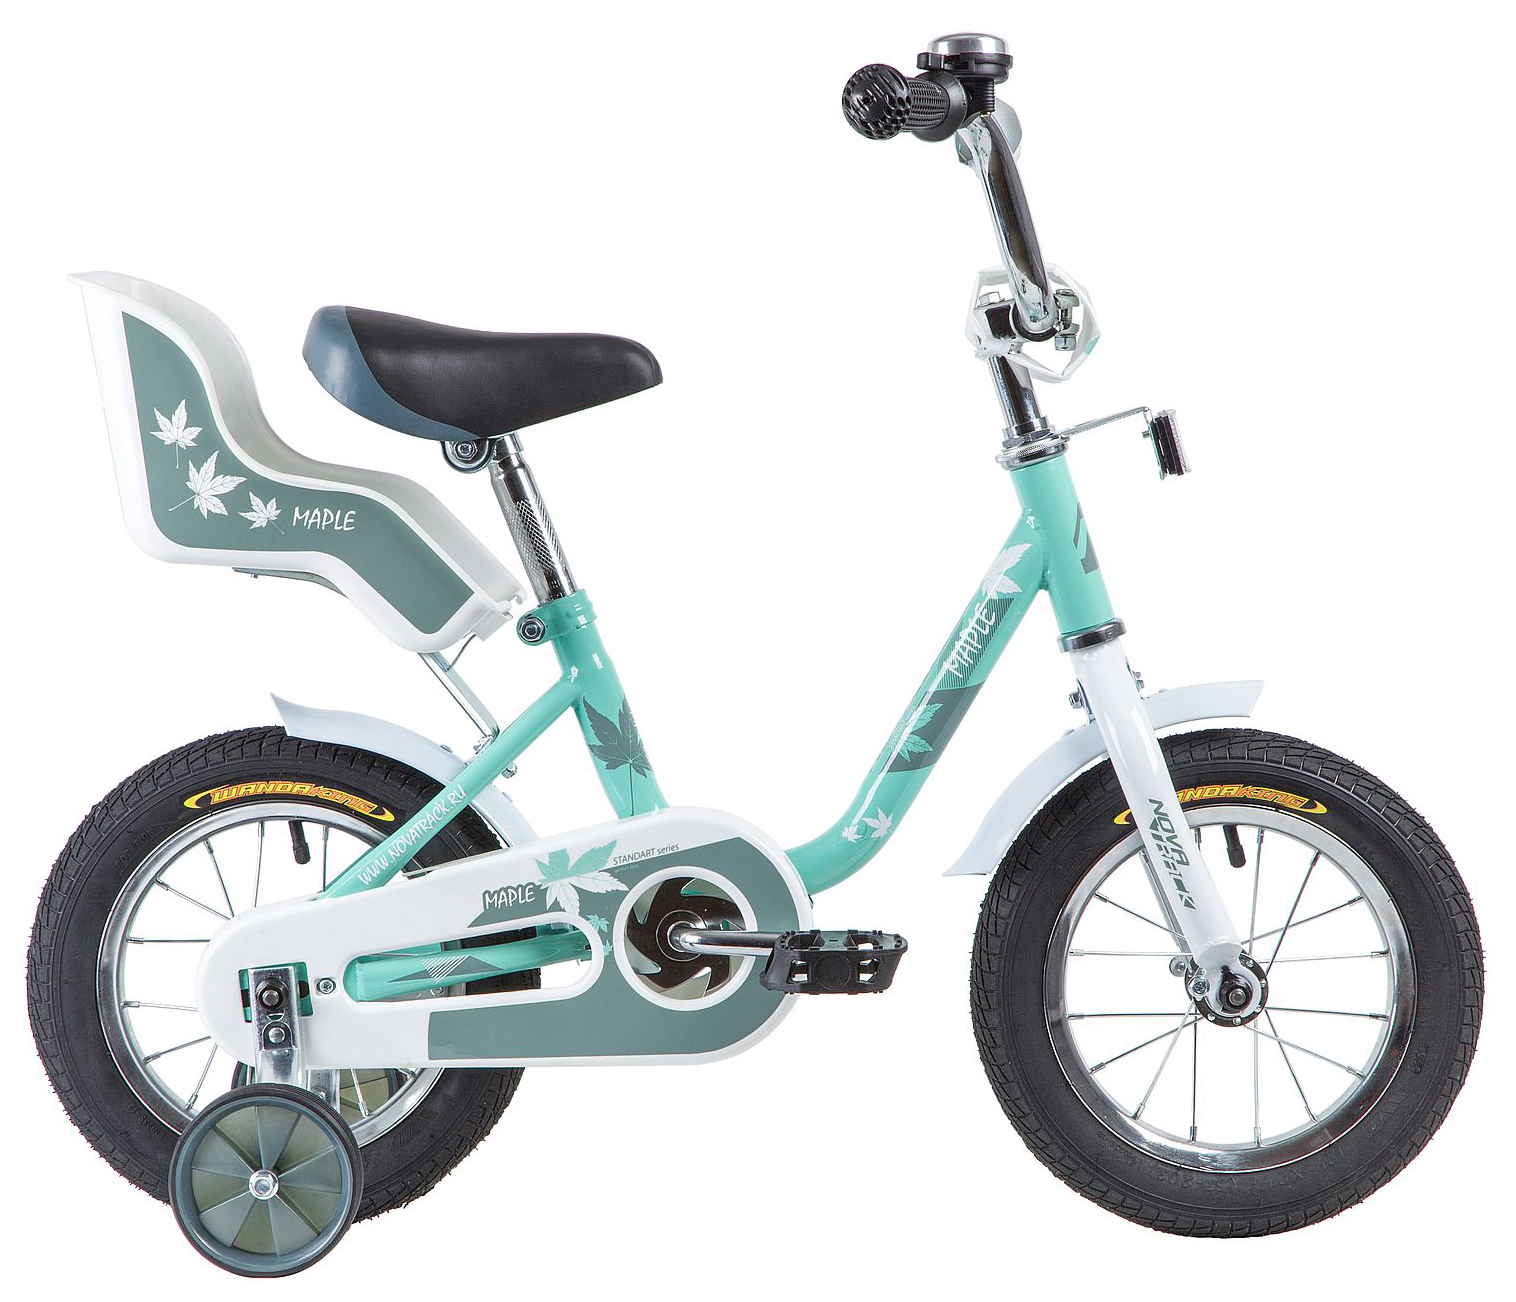  Отзывы о Детском велосипеде Novatrack Maple 12 2021